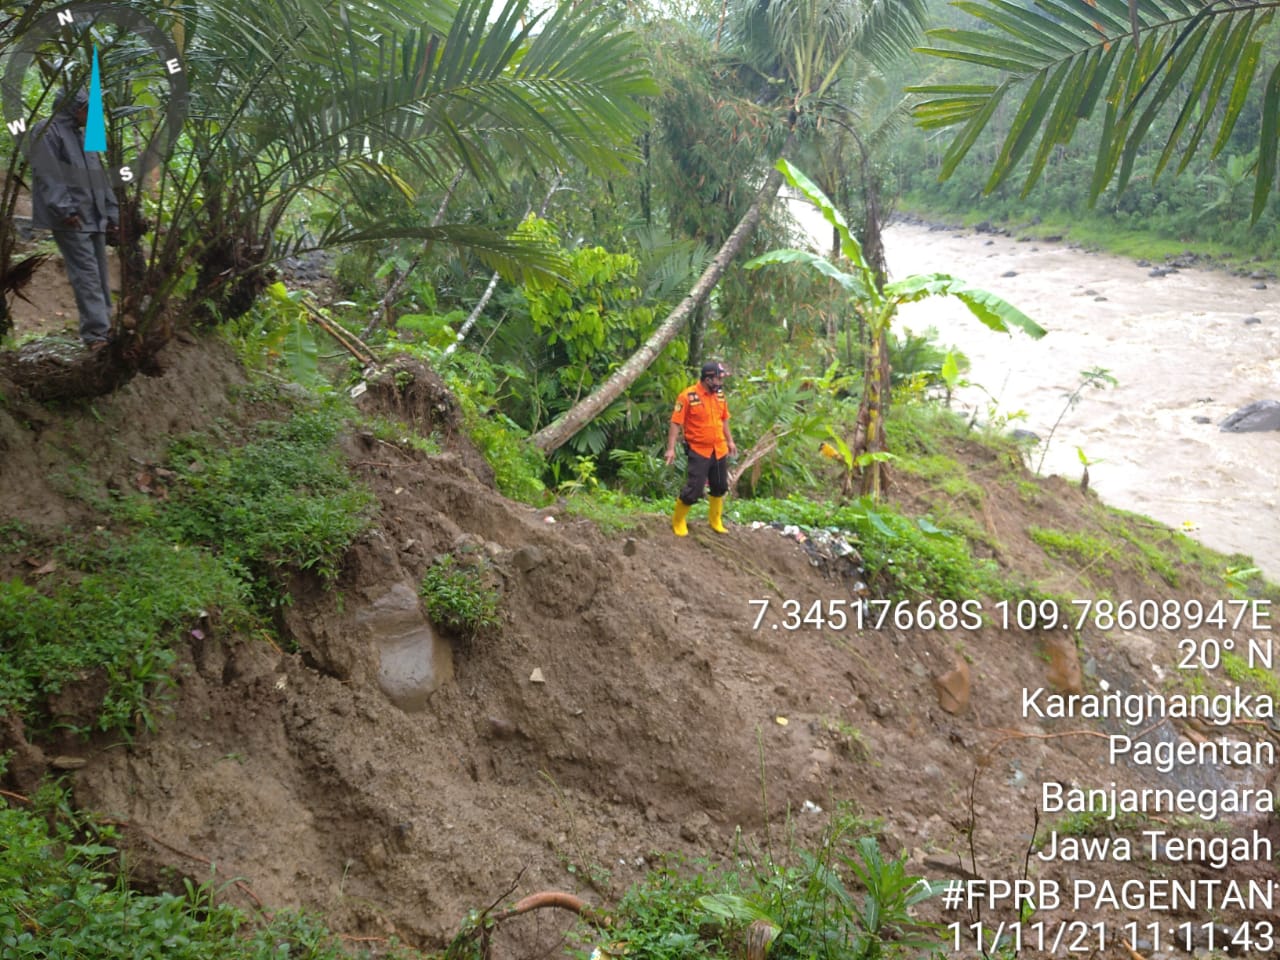 Longsor di Desa Karangnangka, Pagentan akibat meluapnya Sungai Tulis